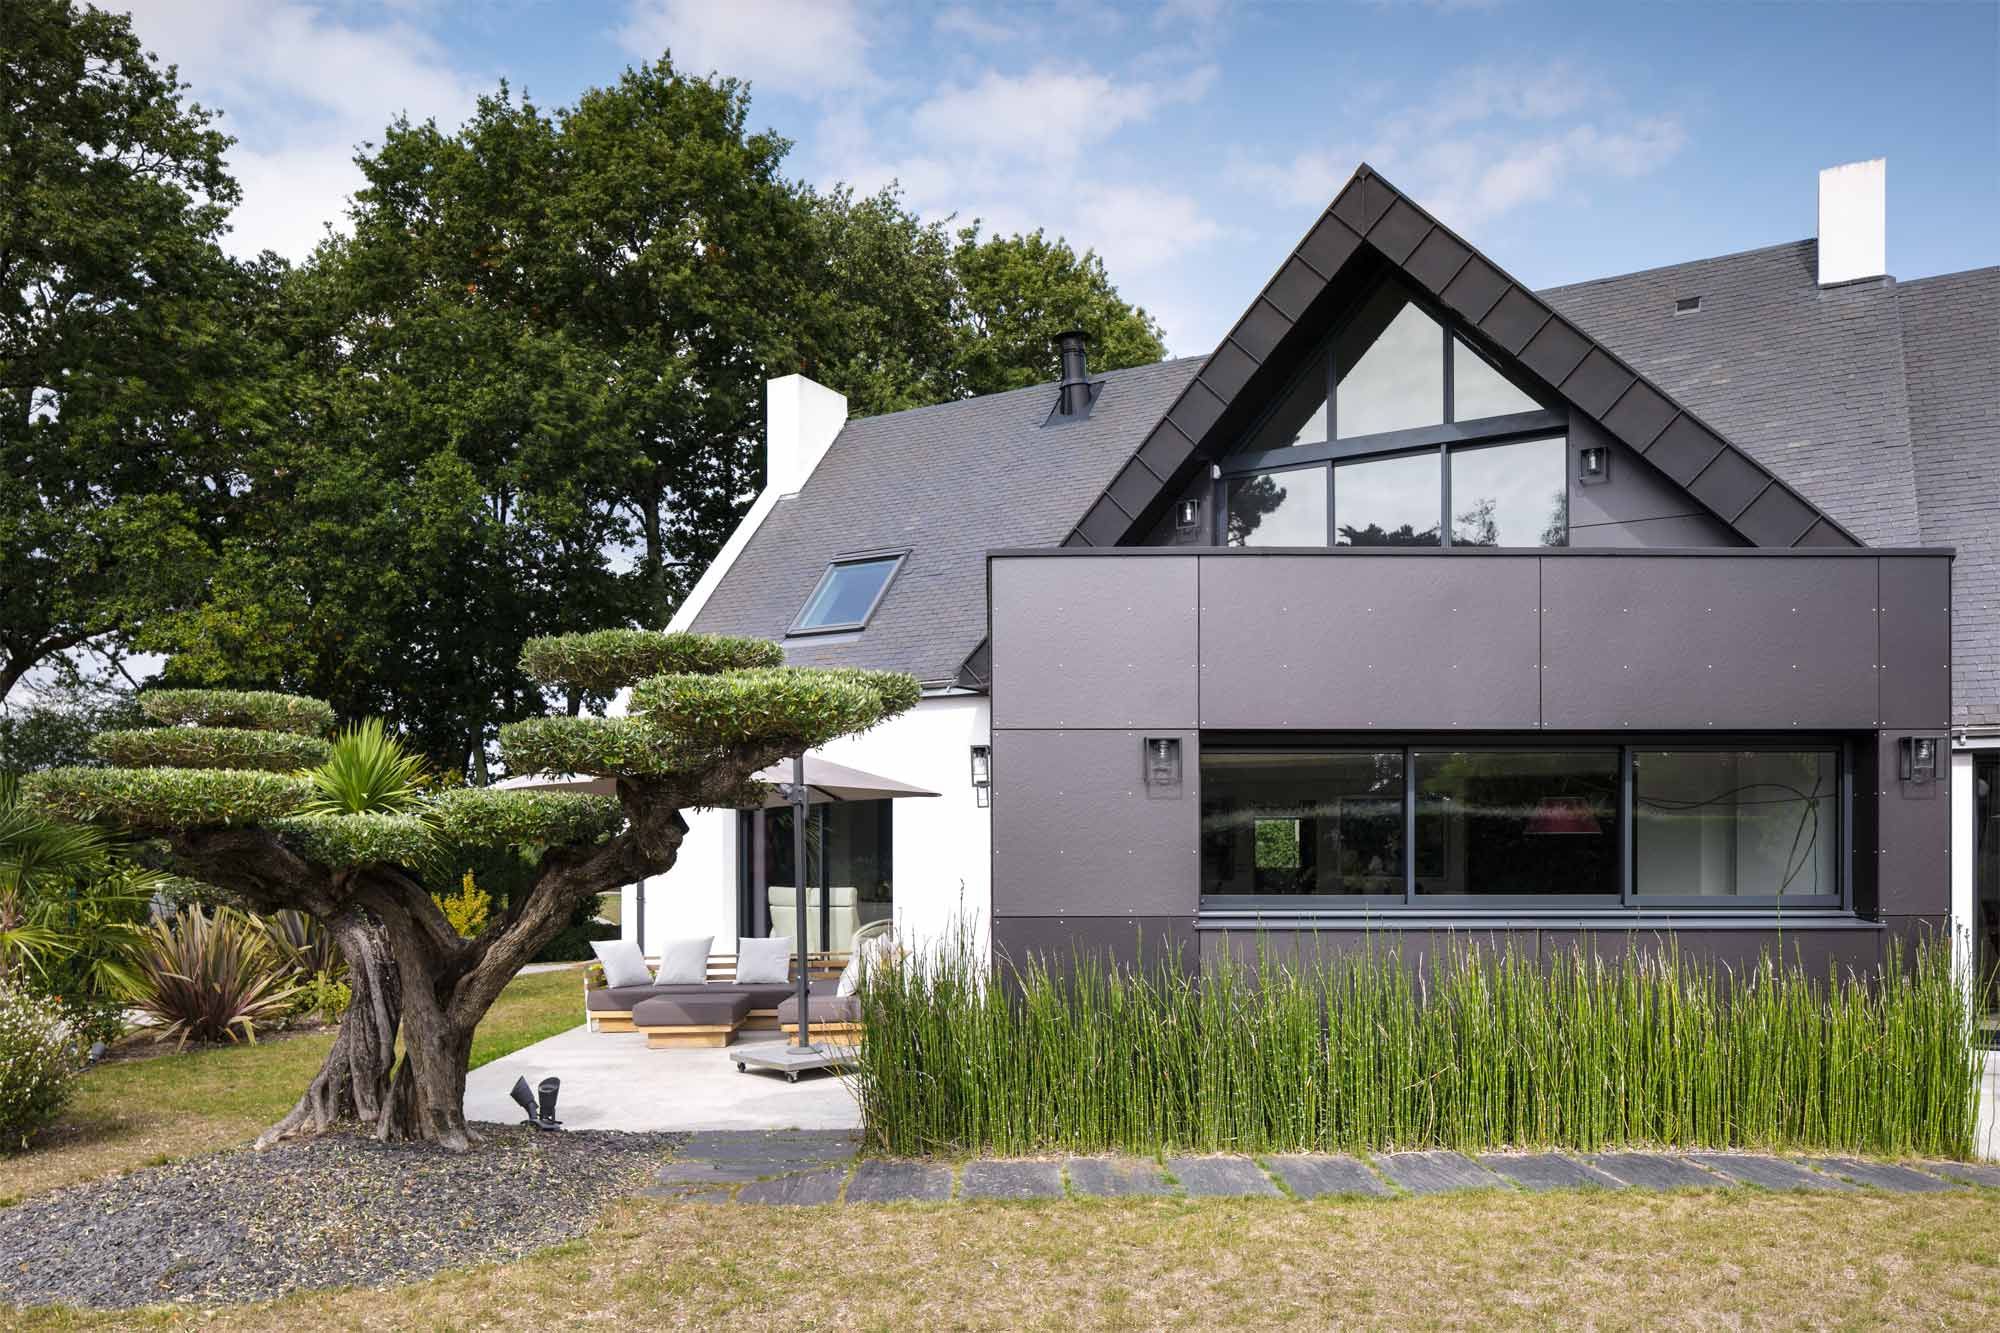 Maison néo-bretonne avec extension en toiture terrasse et bardage fibro-ciment